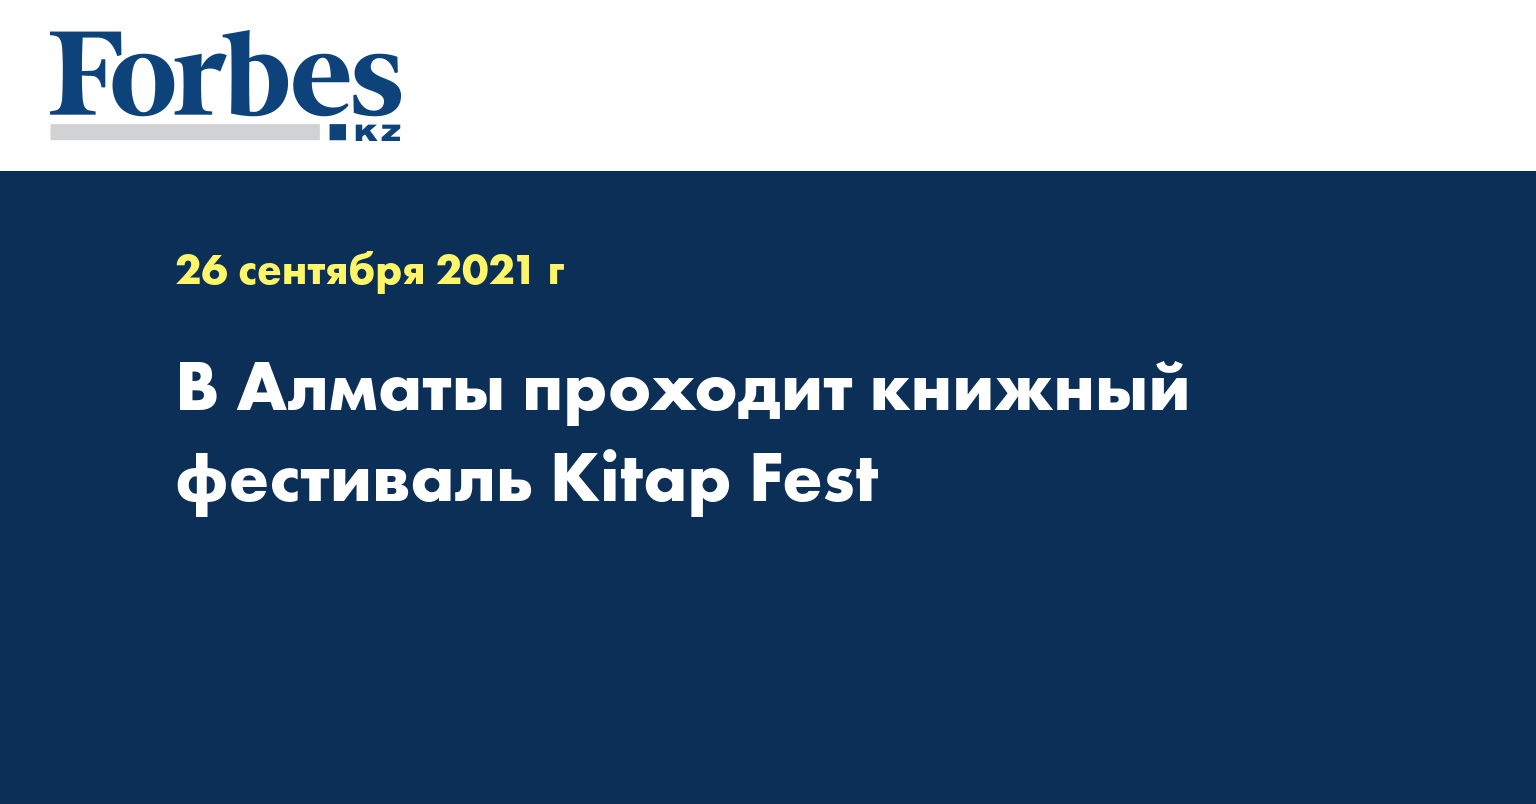 В Алматы проходит книжный фестиваль Kitap Fest